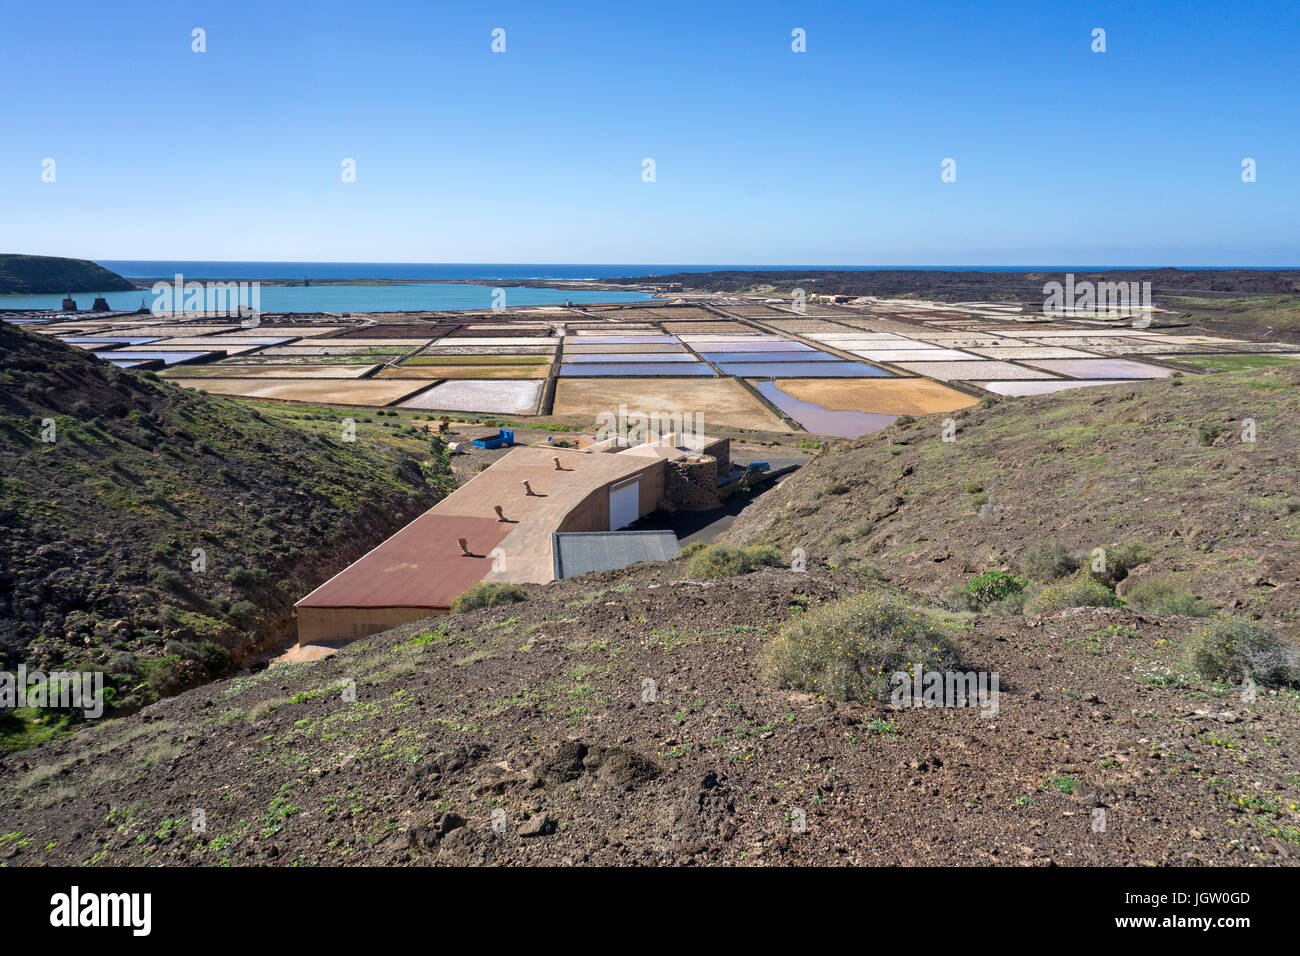 Salinas de Janubio, sale marino soluzione salina a sud-ovest della costa dell'isola di Lanzarote, Isole canarie, Spagna, Europa Foto Stock